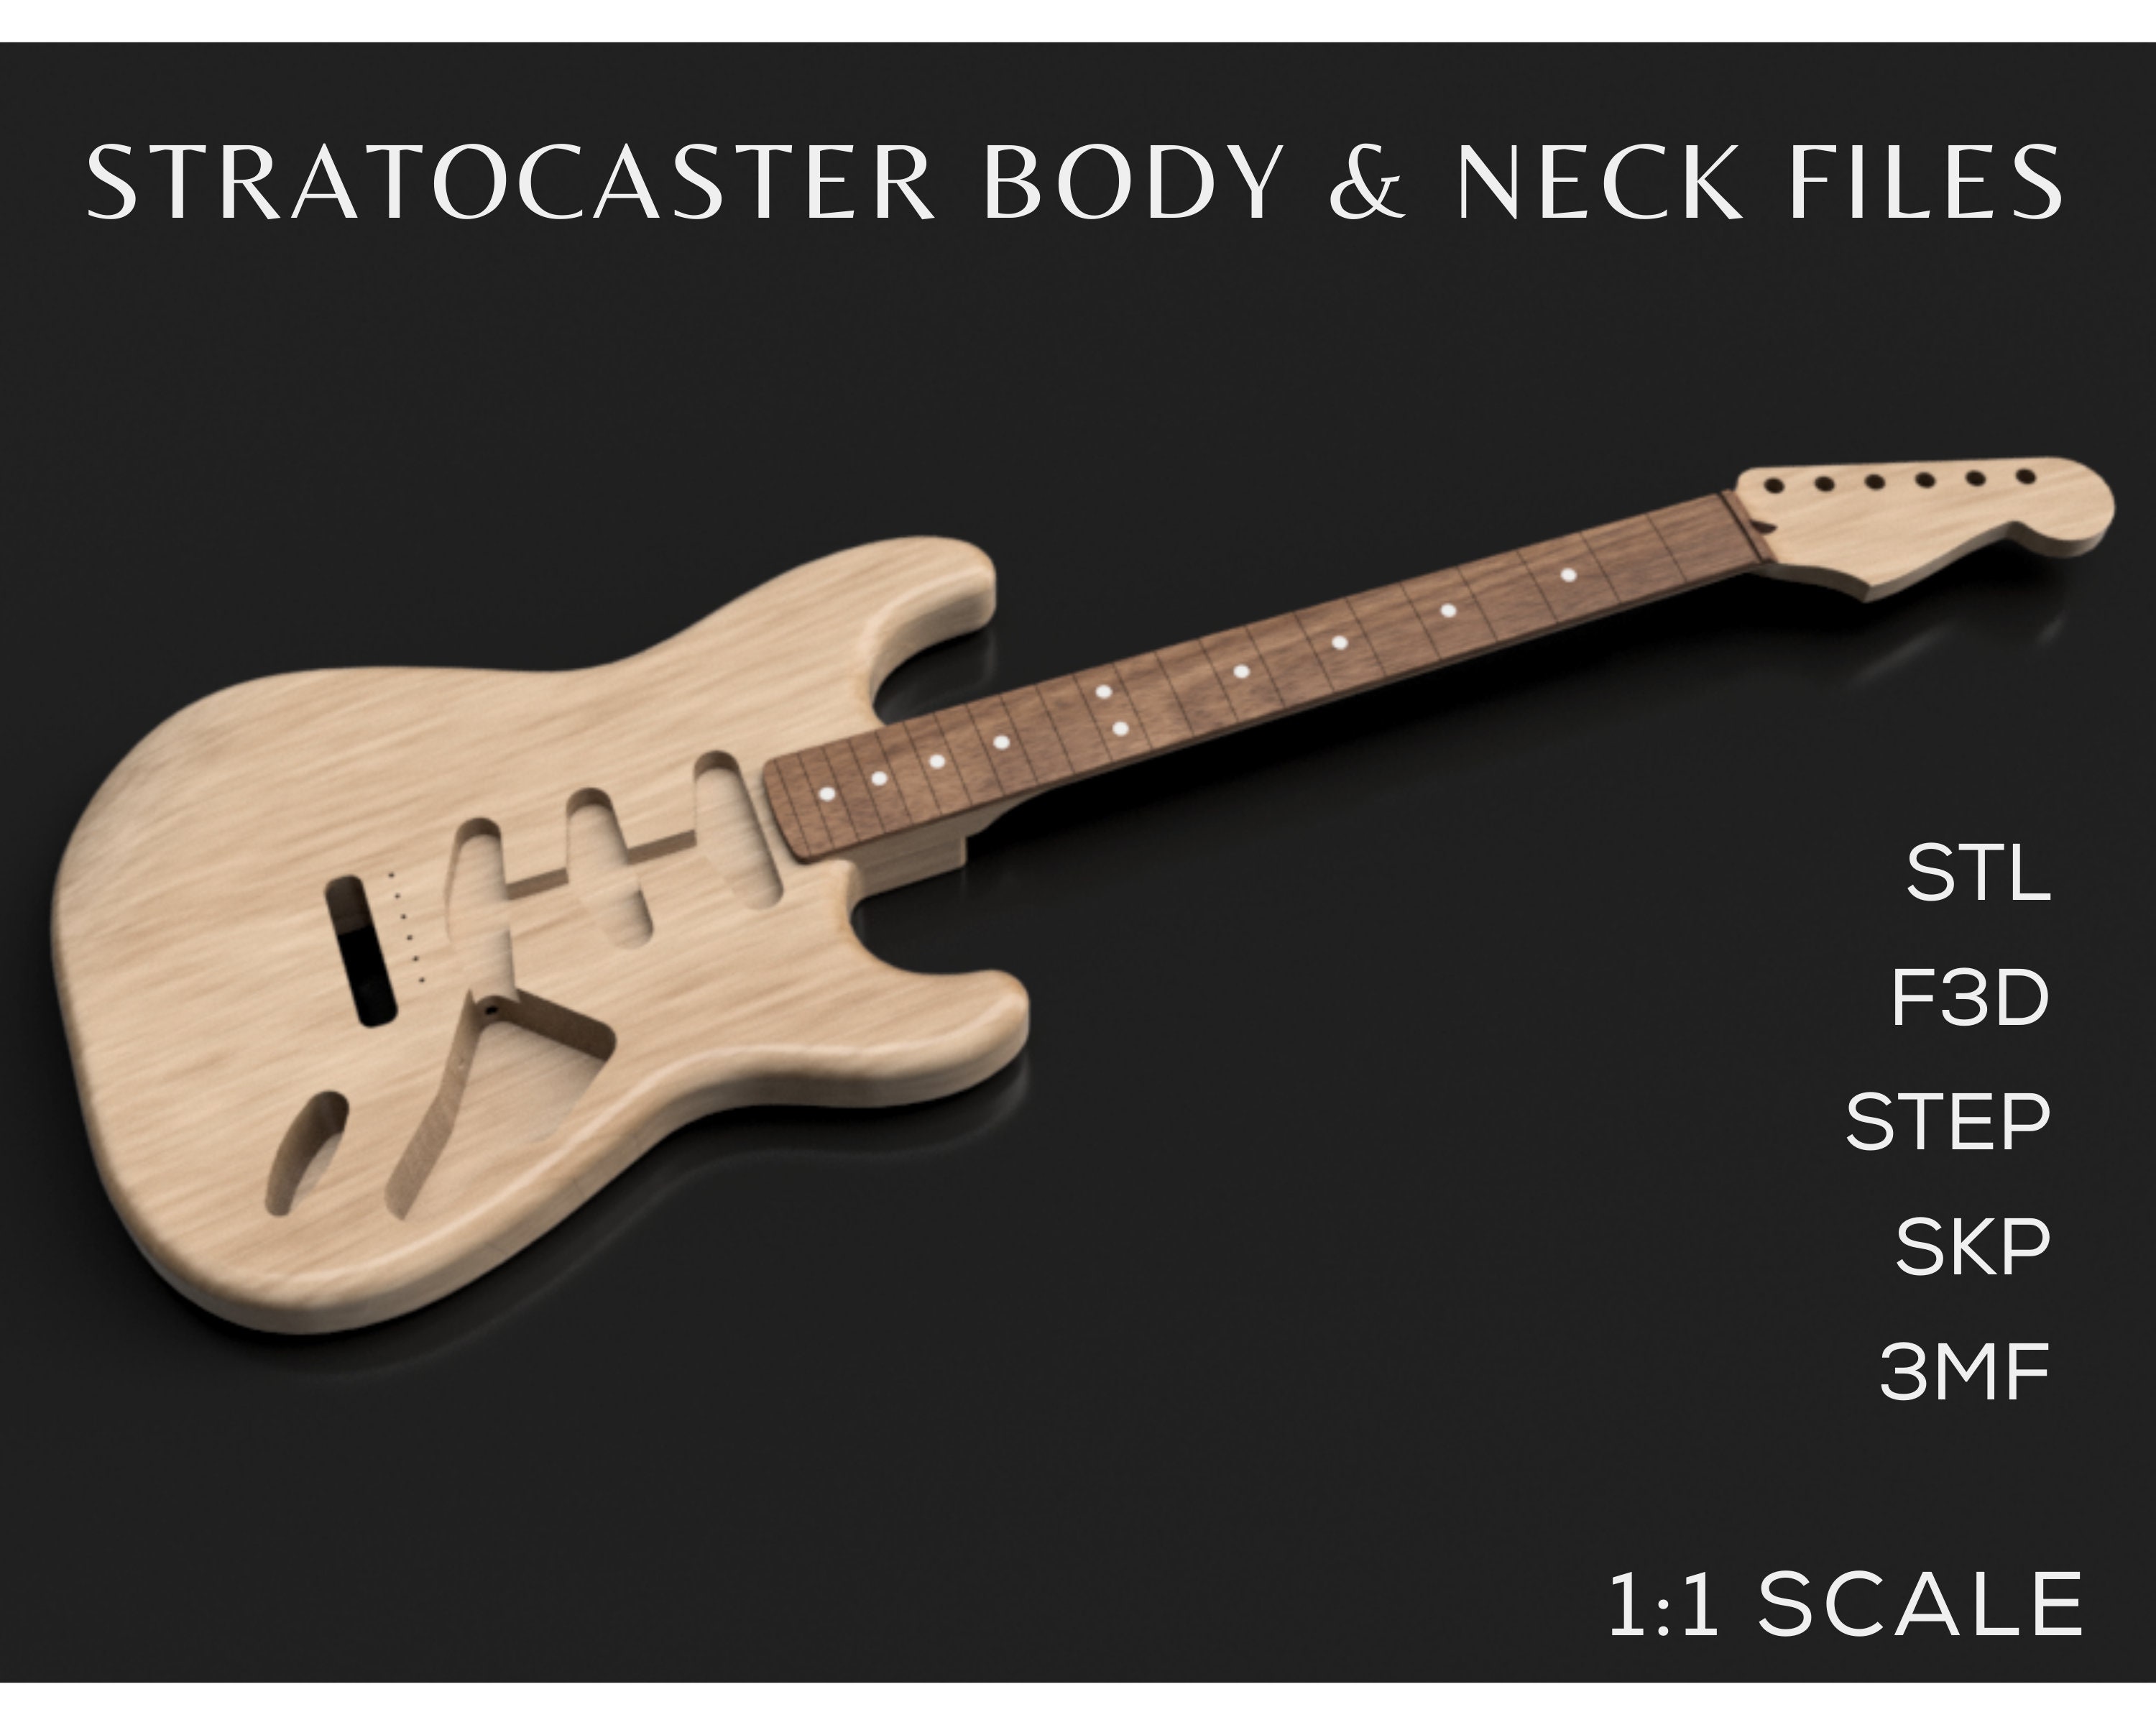 Fender Stratocaster Guitar Body & Neck 3D CAD File Bundle Stl F3d Step 3mf  Skp Instant Download CNC Plan Guitar Making Strat Model 